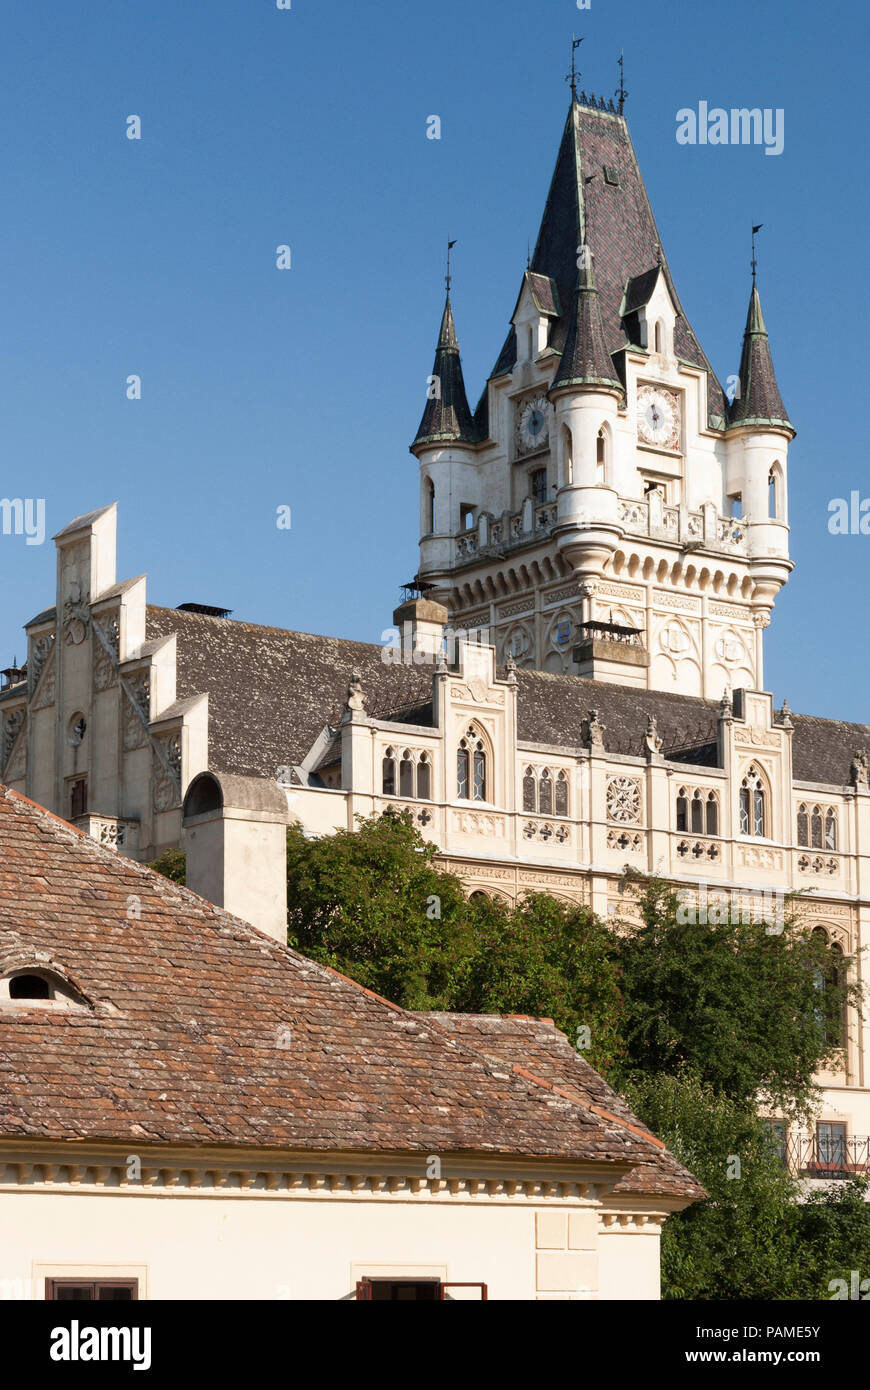 Das Schloss Grafenegg ist das wohl bekannteste Beispiel des romantischen Historismus in Österreich und ist ein beliebtes Ziel für Touristen Stockfoto